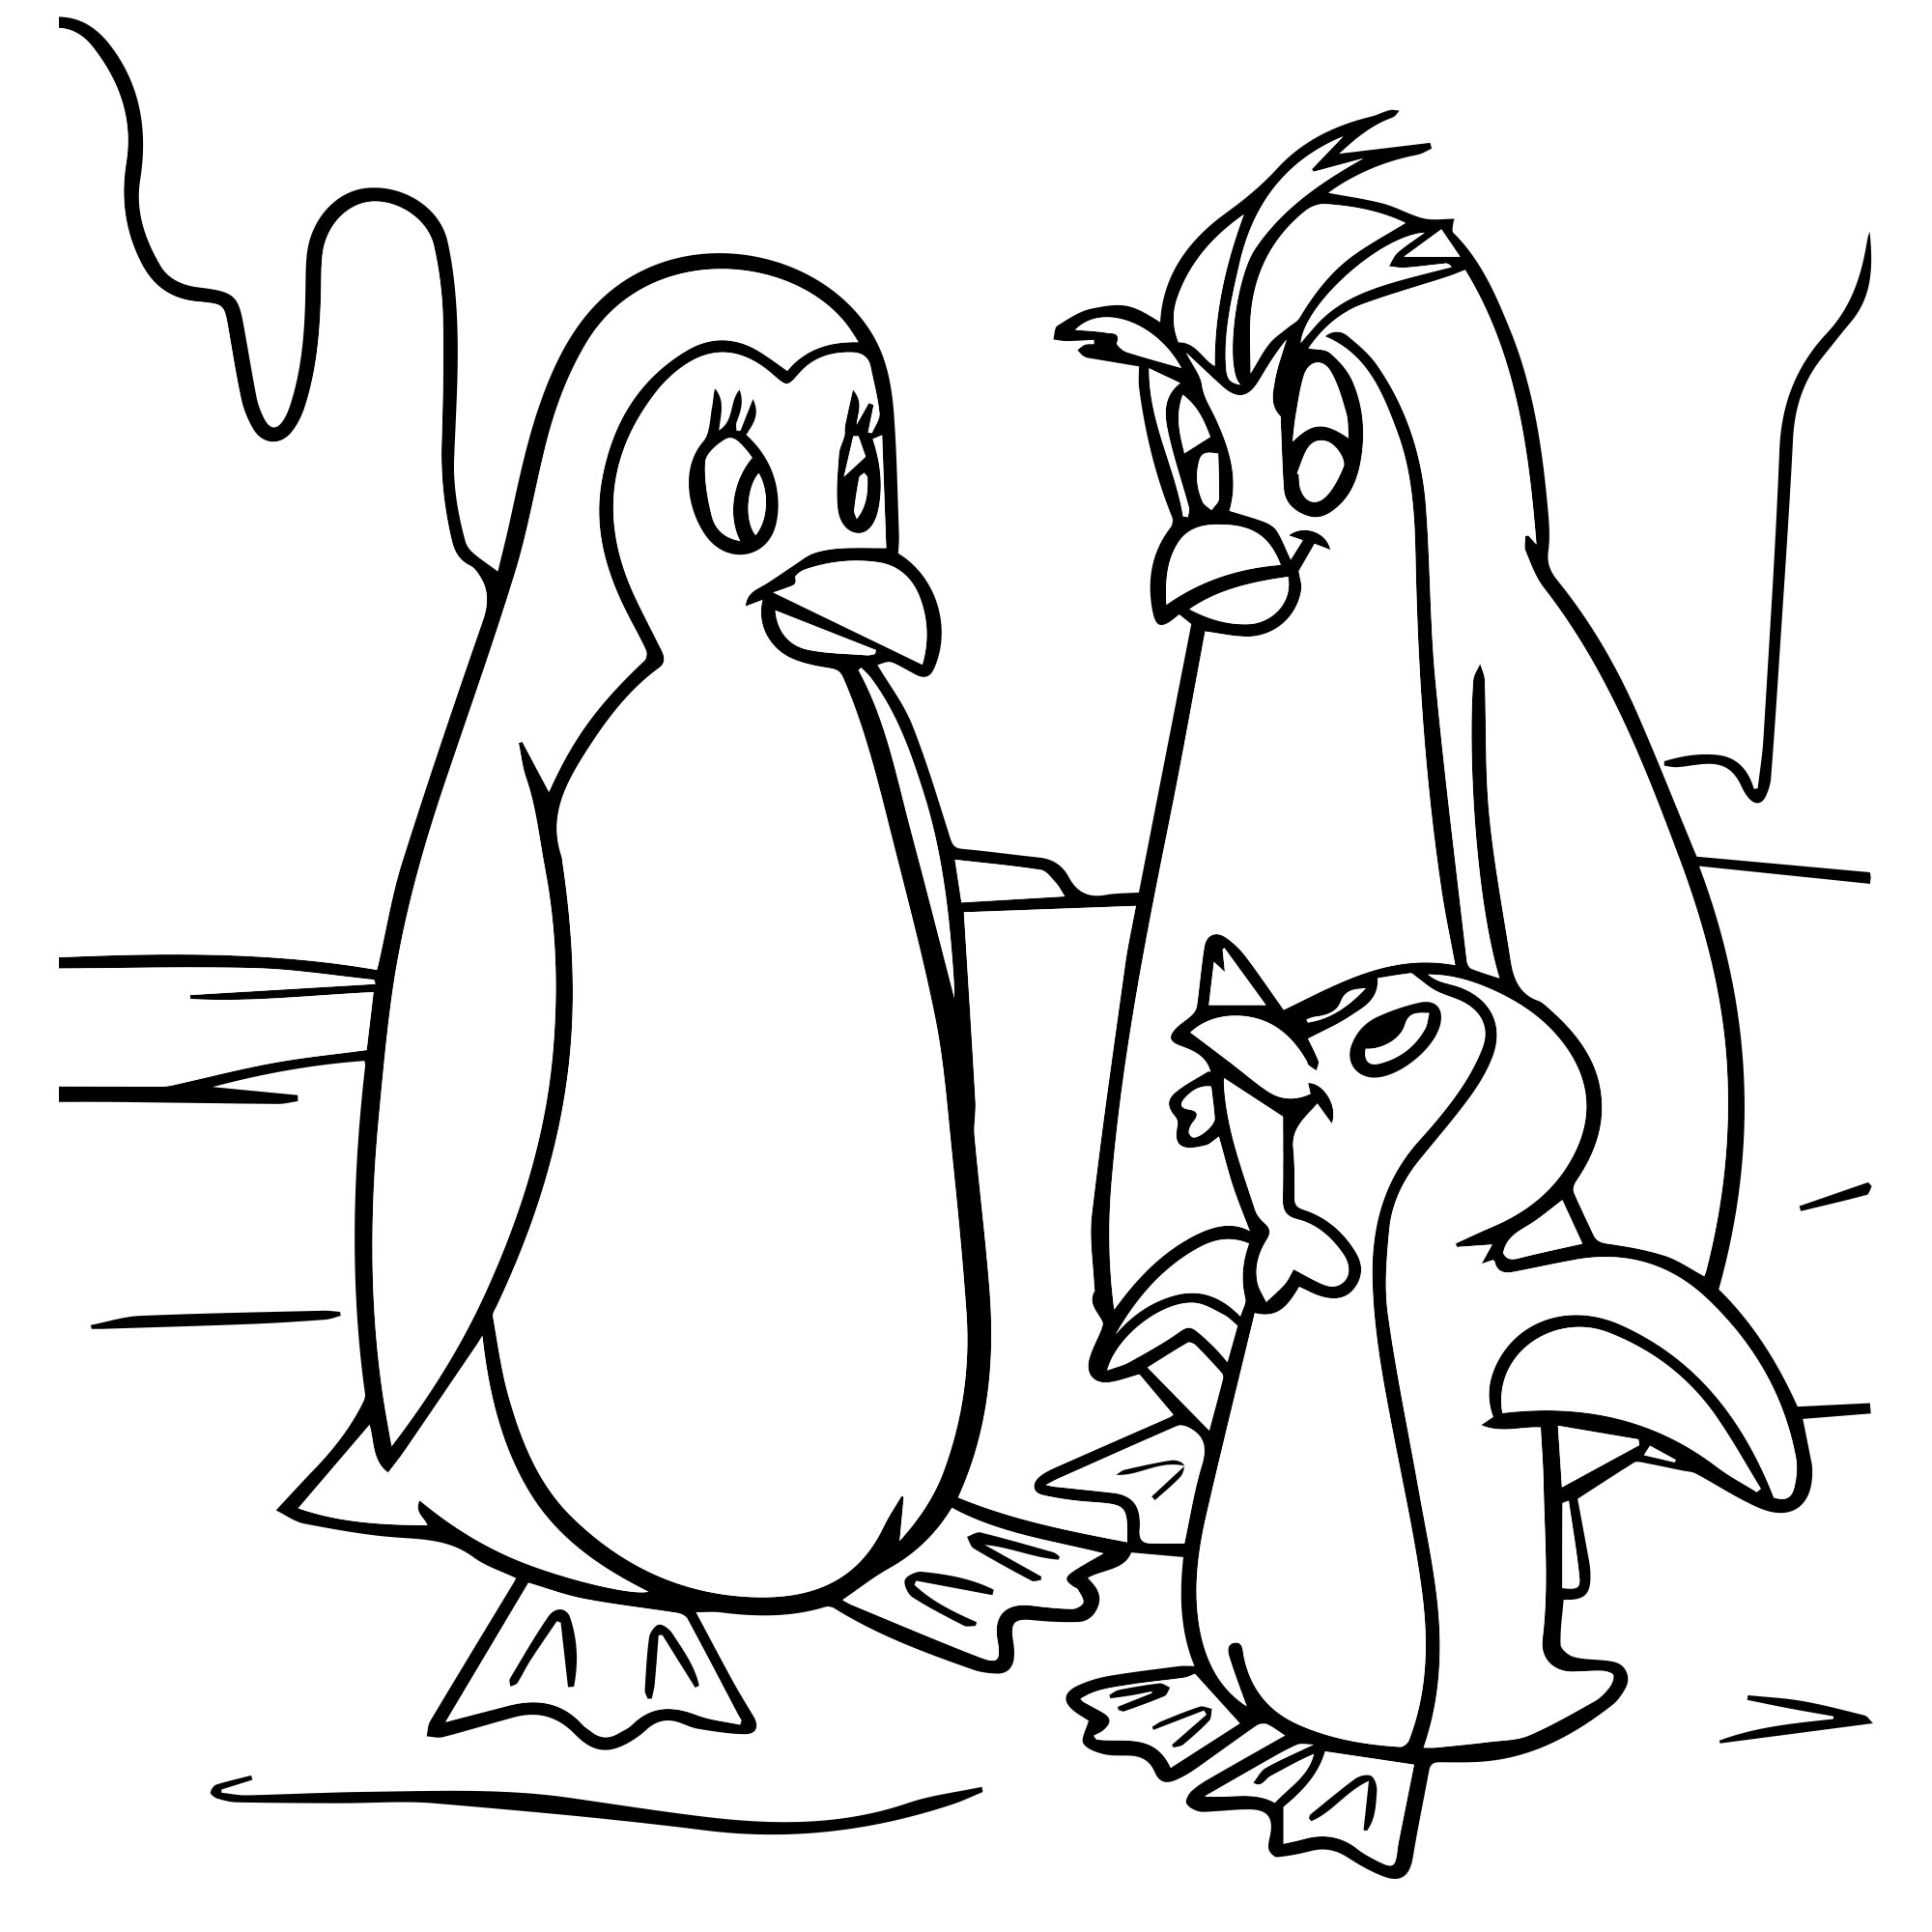 Раскраски пингвин скачать и распечатать бесплатно